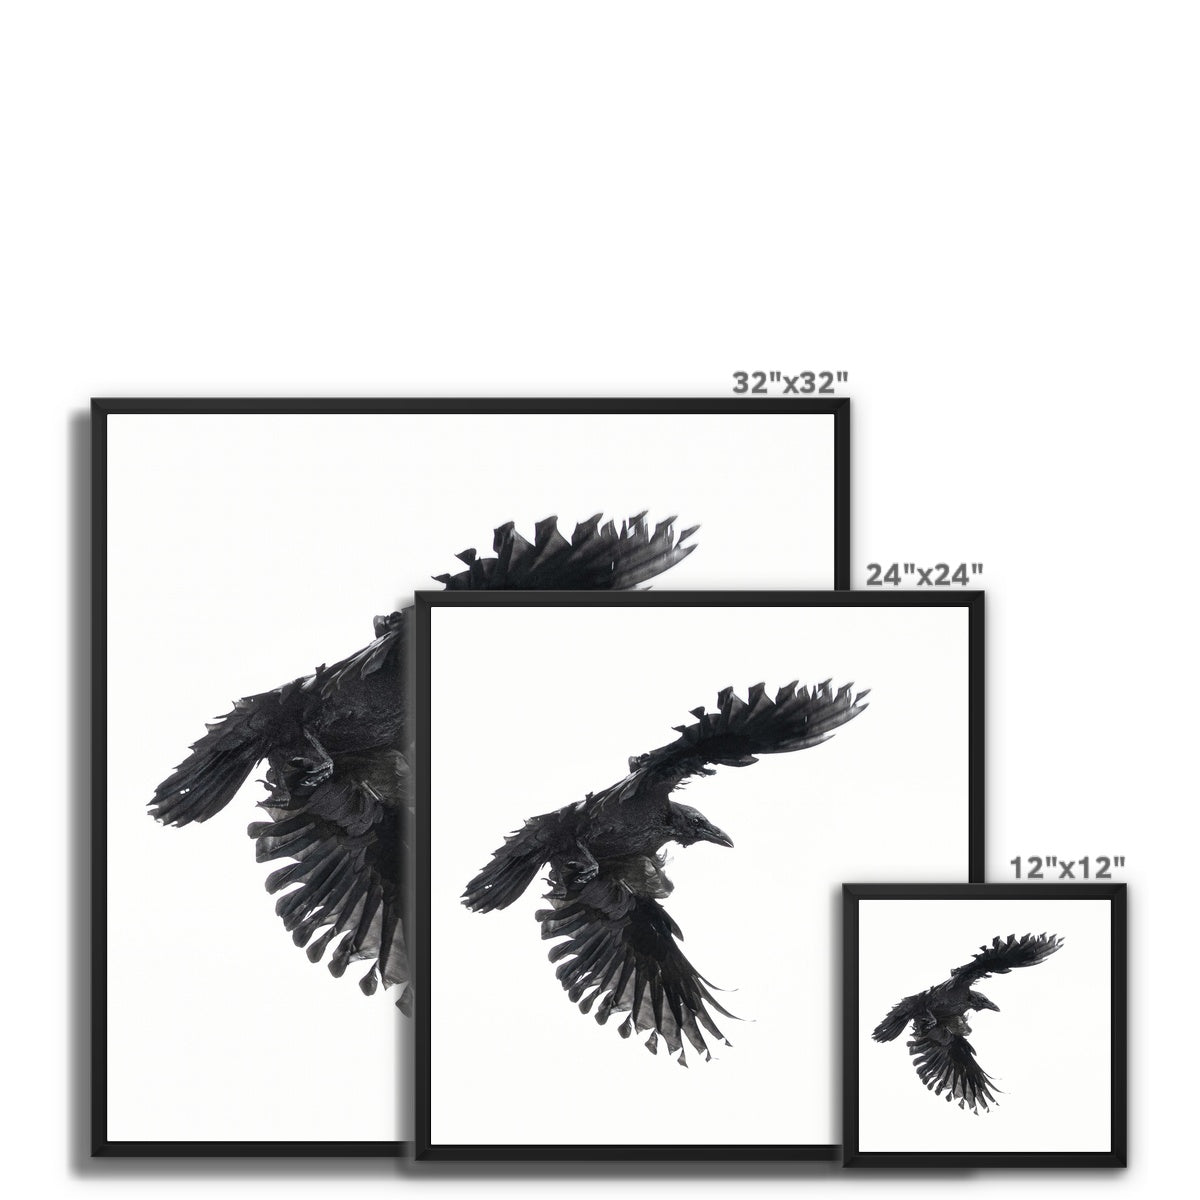 Raven 1 Framed Canvas